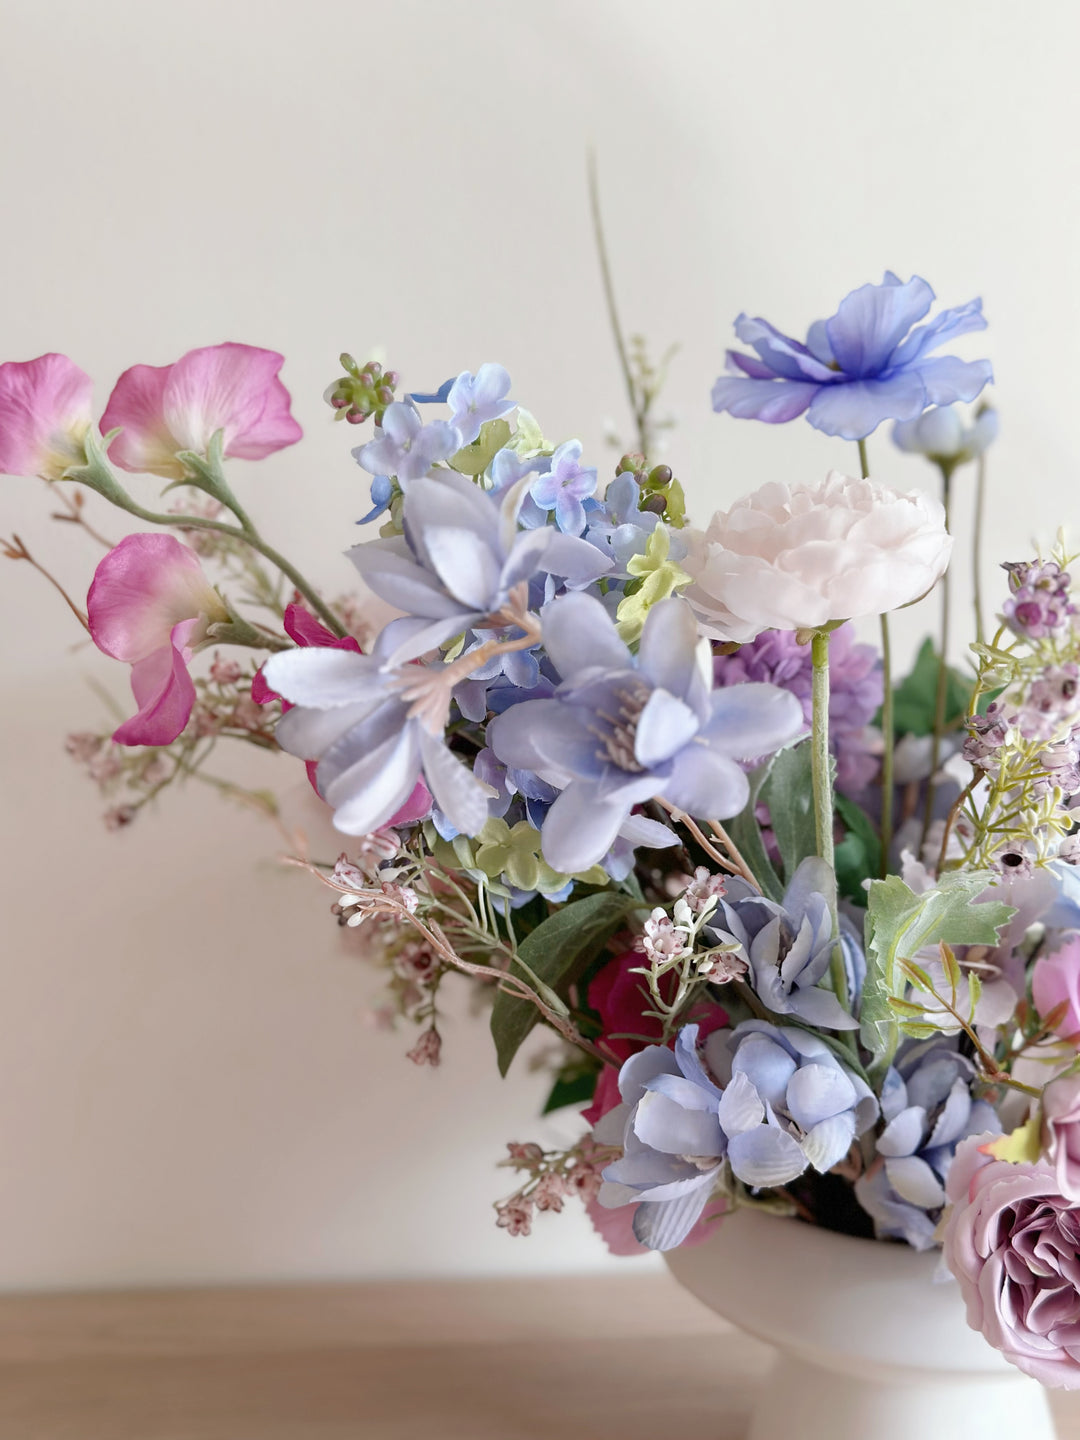 Violet Whisper Floral Elegance in The Pot (2-sided)